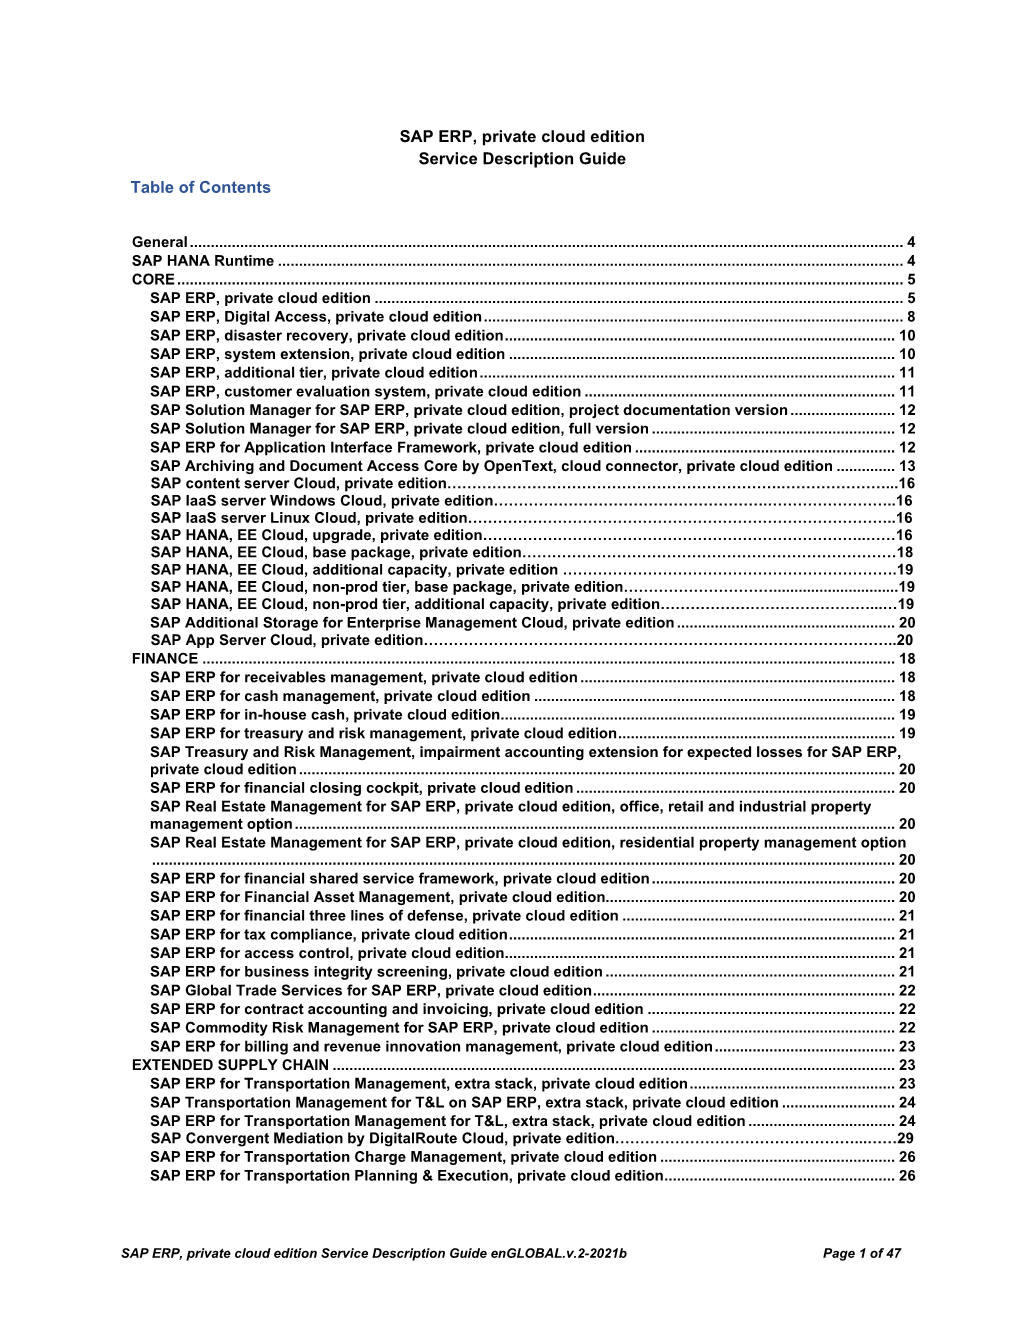 SAP ERP, Private Cloud Edition Service Description Guide Table of Contents